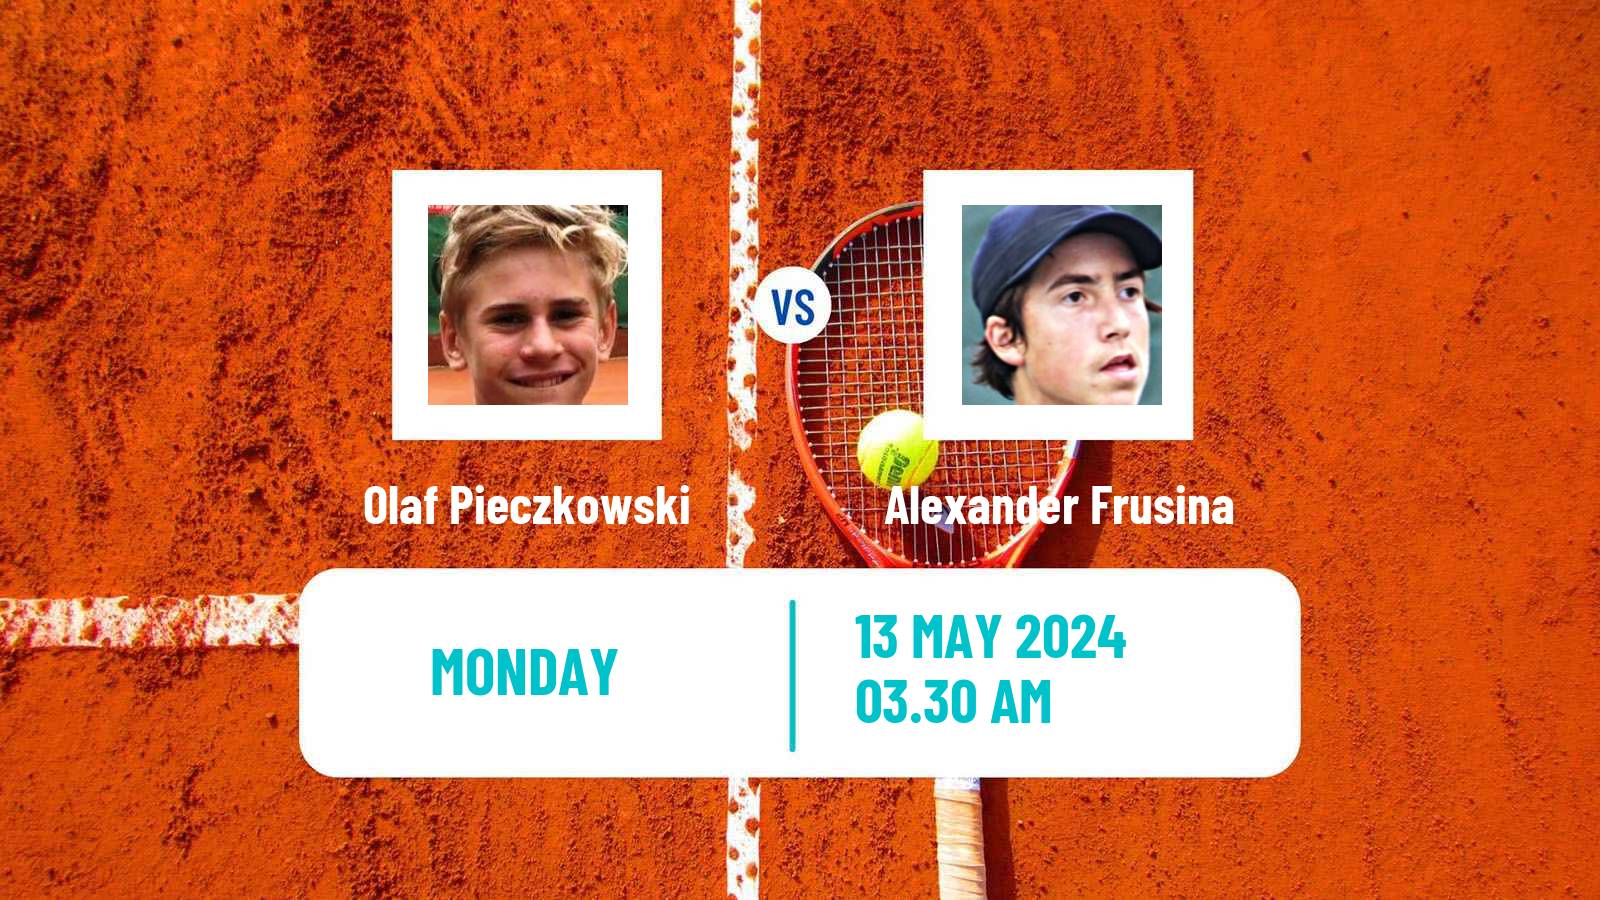 Tennis ITF M15 Bucharest 2 Men Olaf Pieczkowski - Alexander Frusina